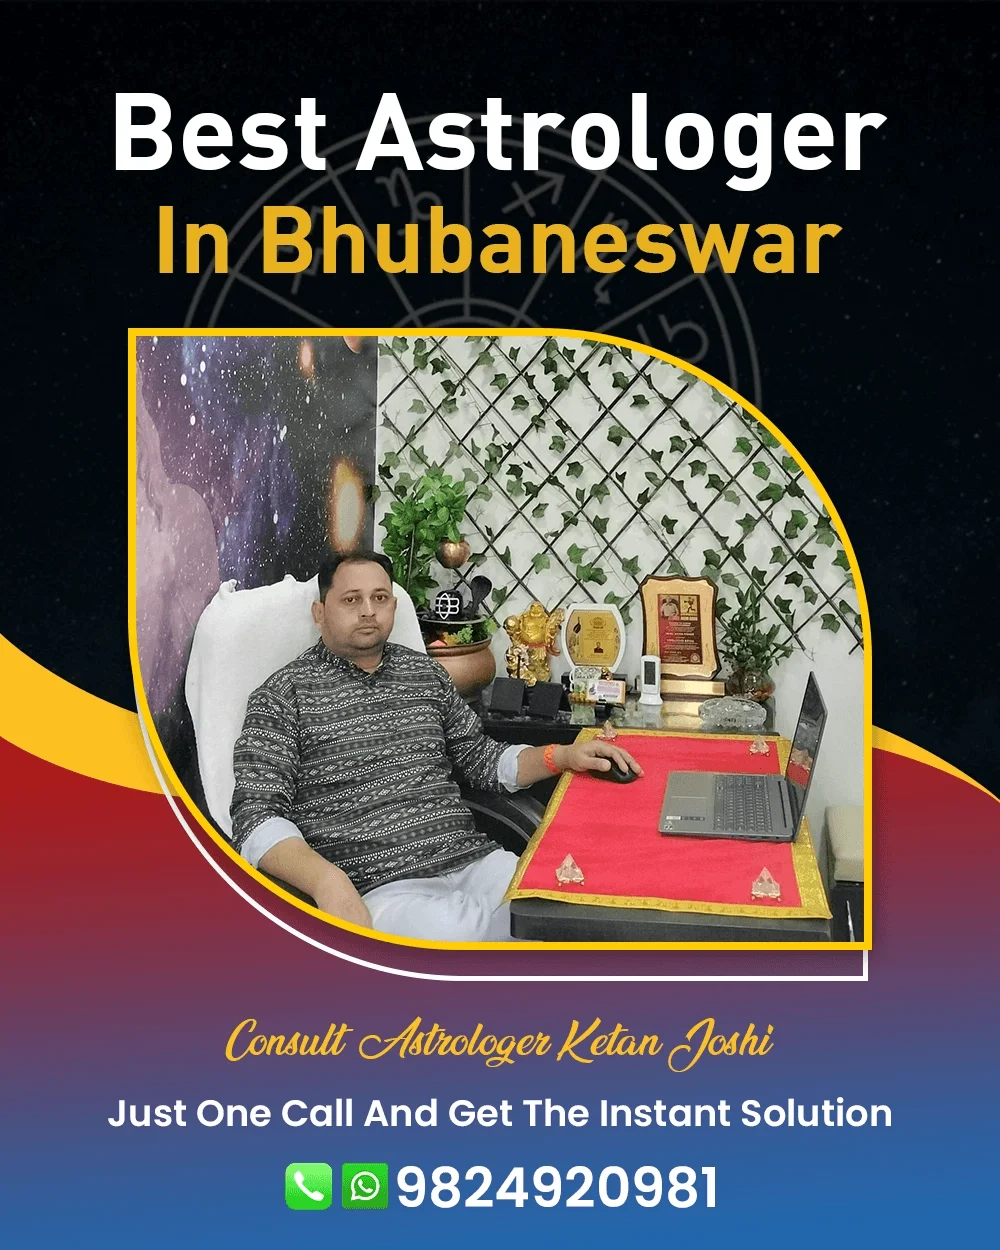 Best Astrologer In Bhubaneswar